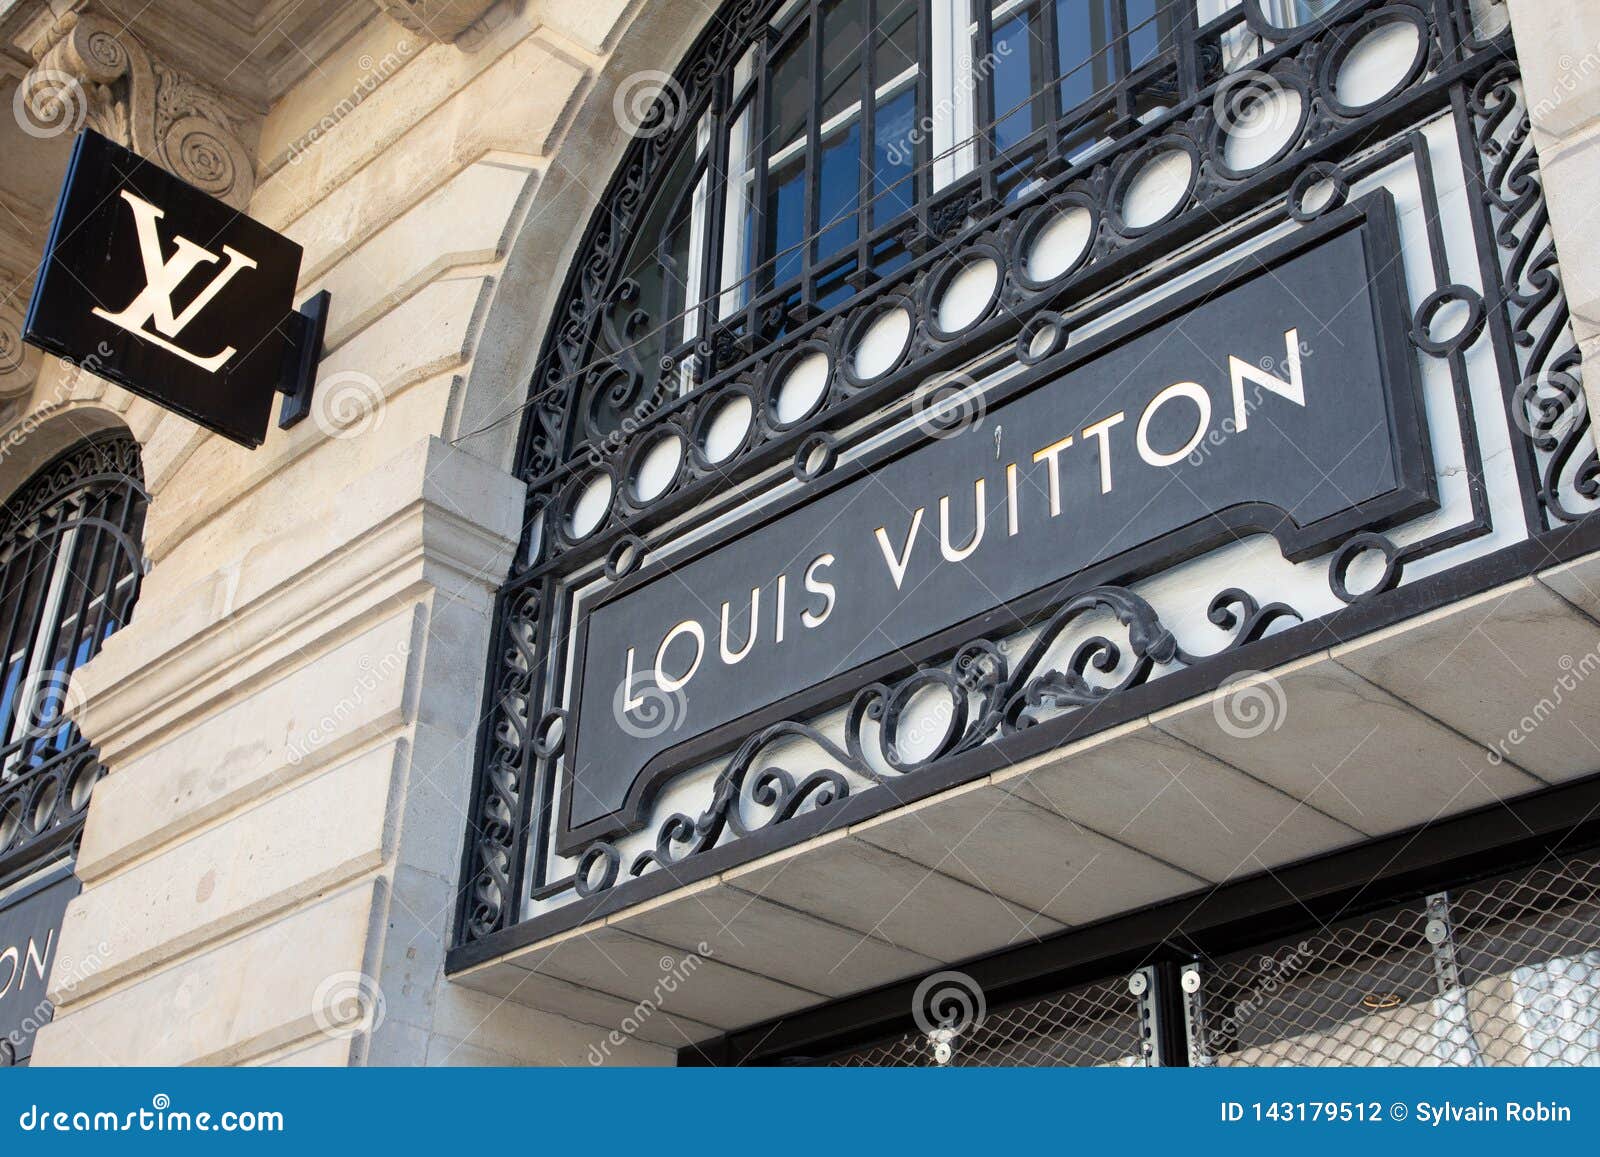 Bordeaux, Aquitaine / France - March 22 2019 : Louis Vuitton Store Sign Shop Luxury Brand Known ...